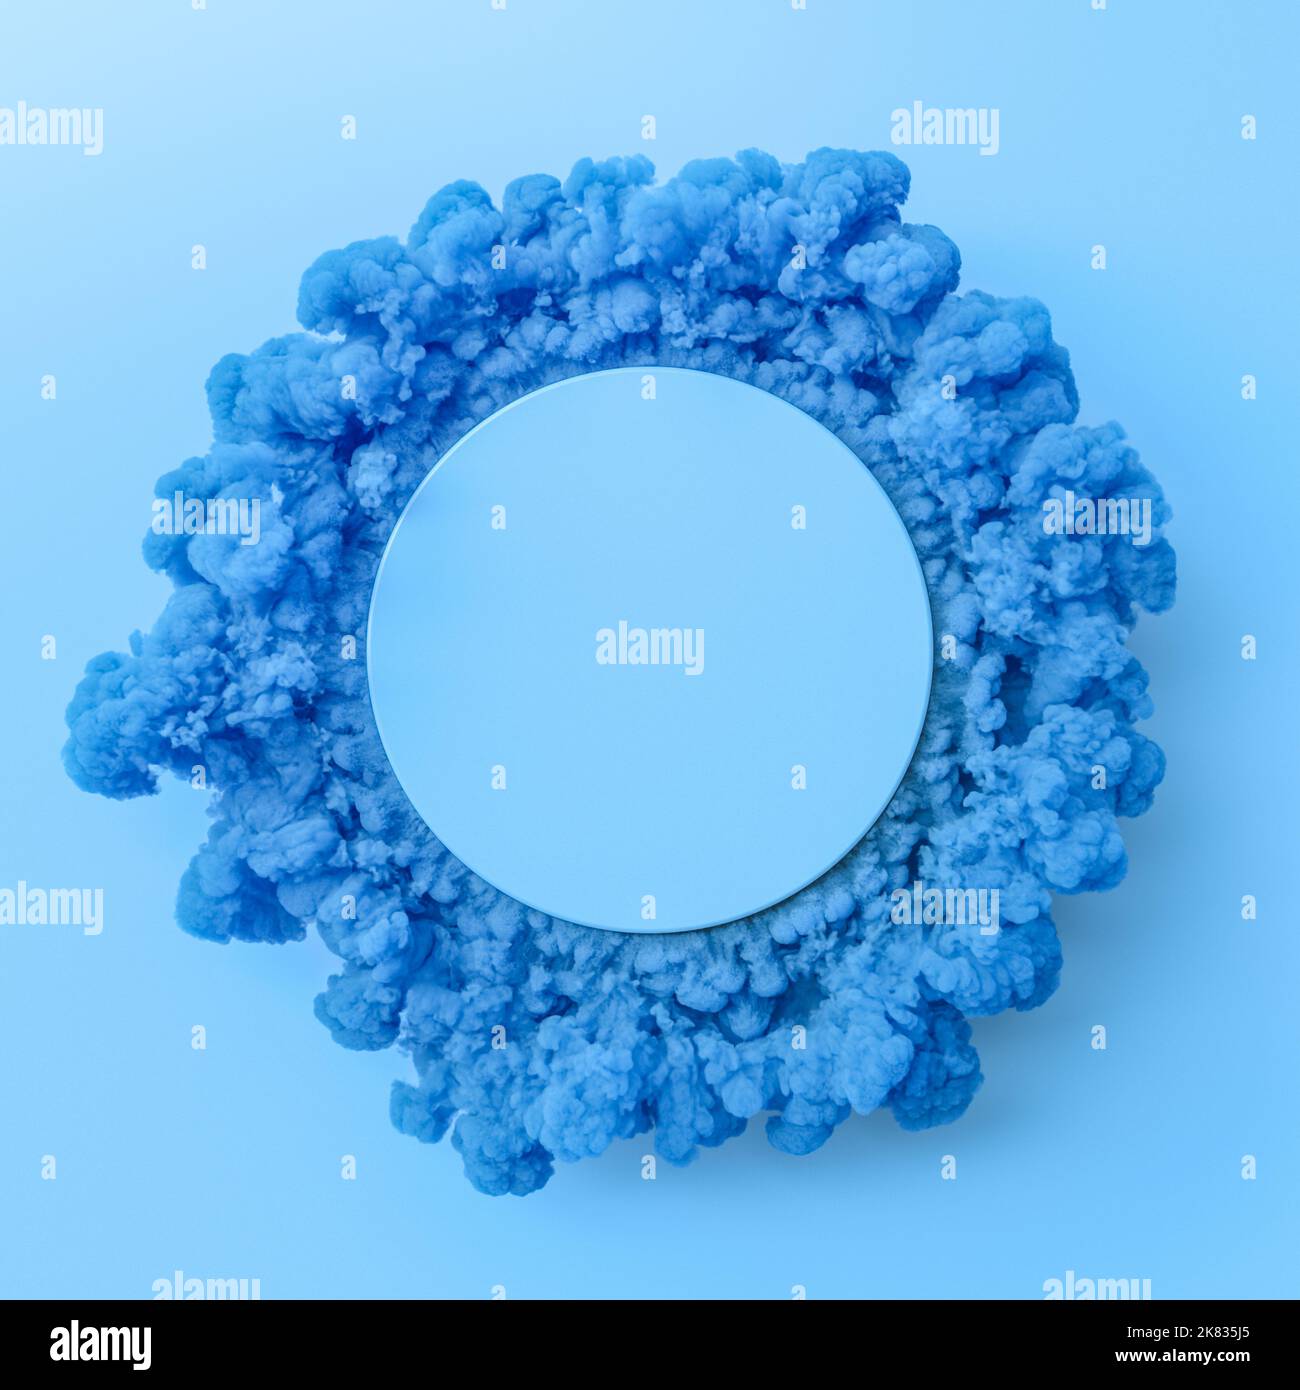 Abstrakter Hintergrund mit leerem Kreis und farbenprächtiger Rauchumfassung. 3D Rendern Stockfoto